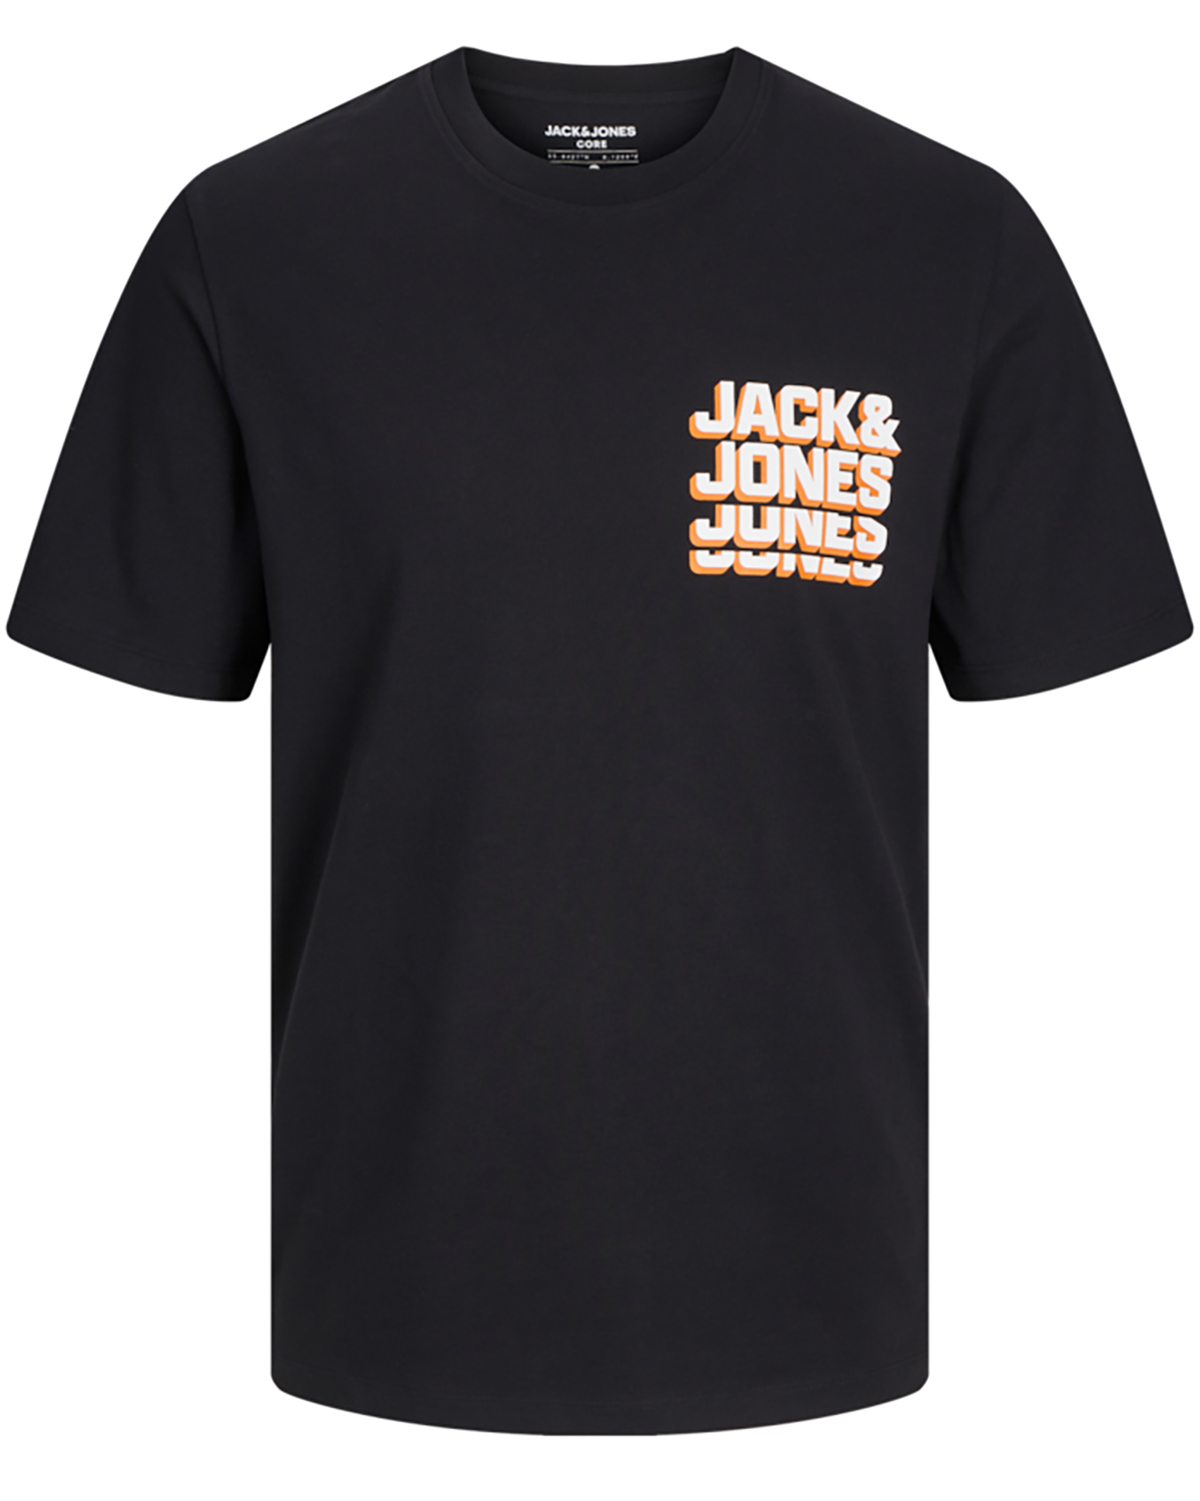 Billede af Jack & Jones t-shirt s/s, Script tee, sort - 176,S+,S